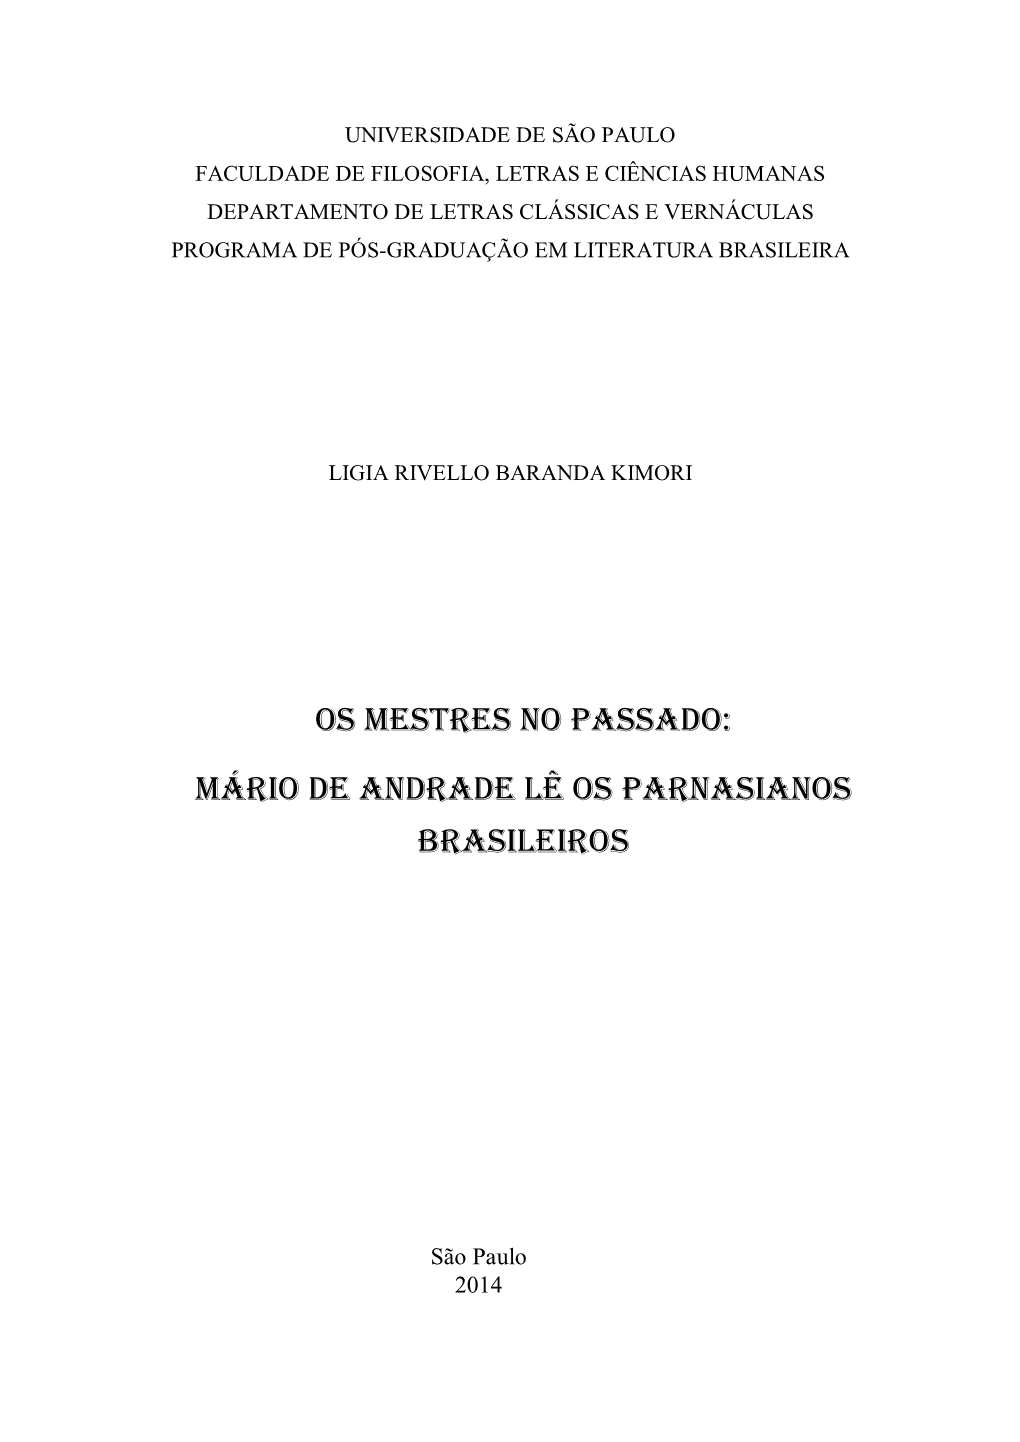 MÁRIO DE ANDRADE LÊ OS PARNASIANOS Brasileiros